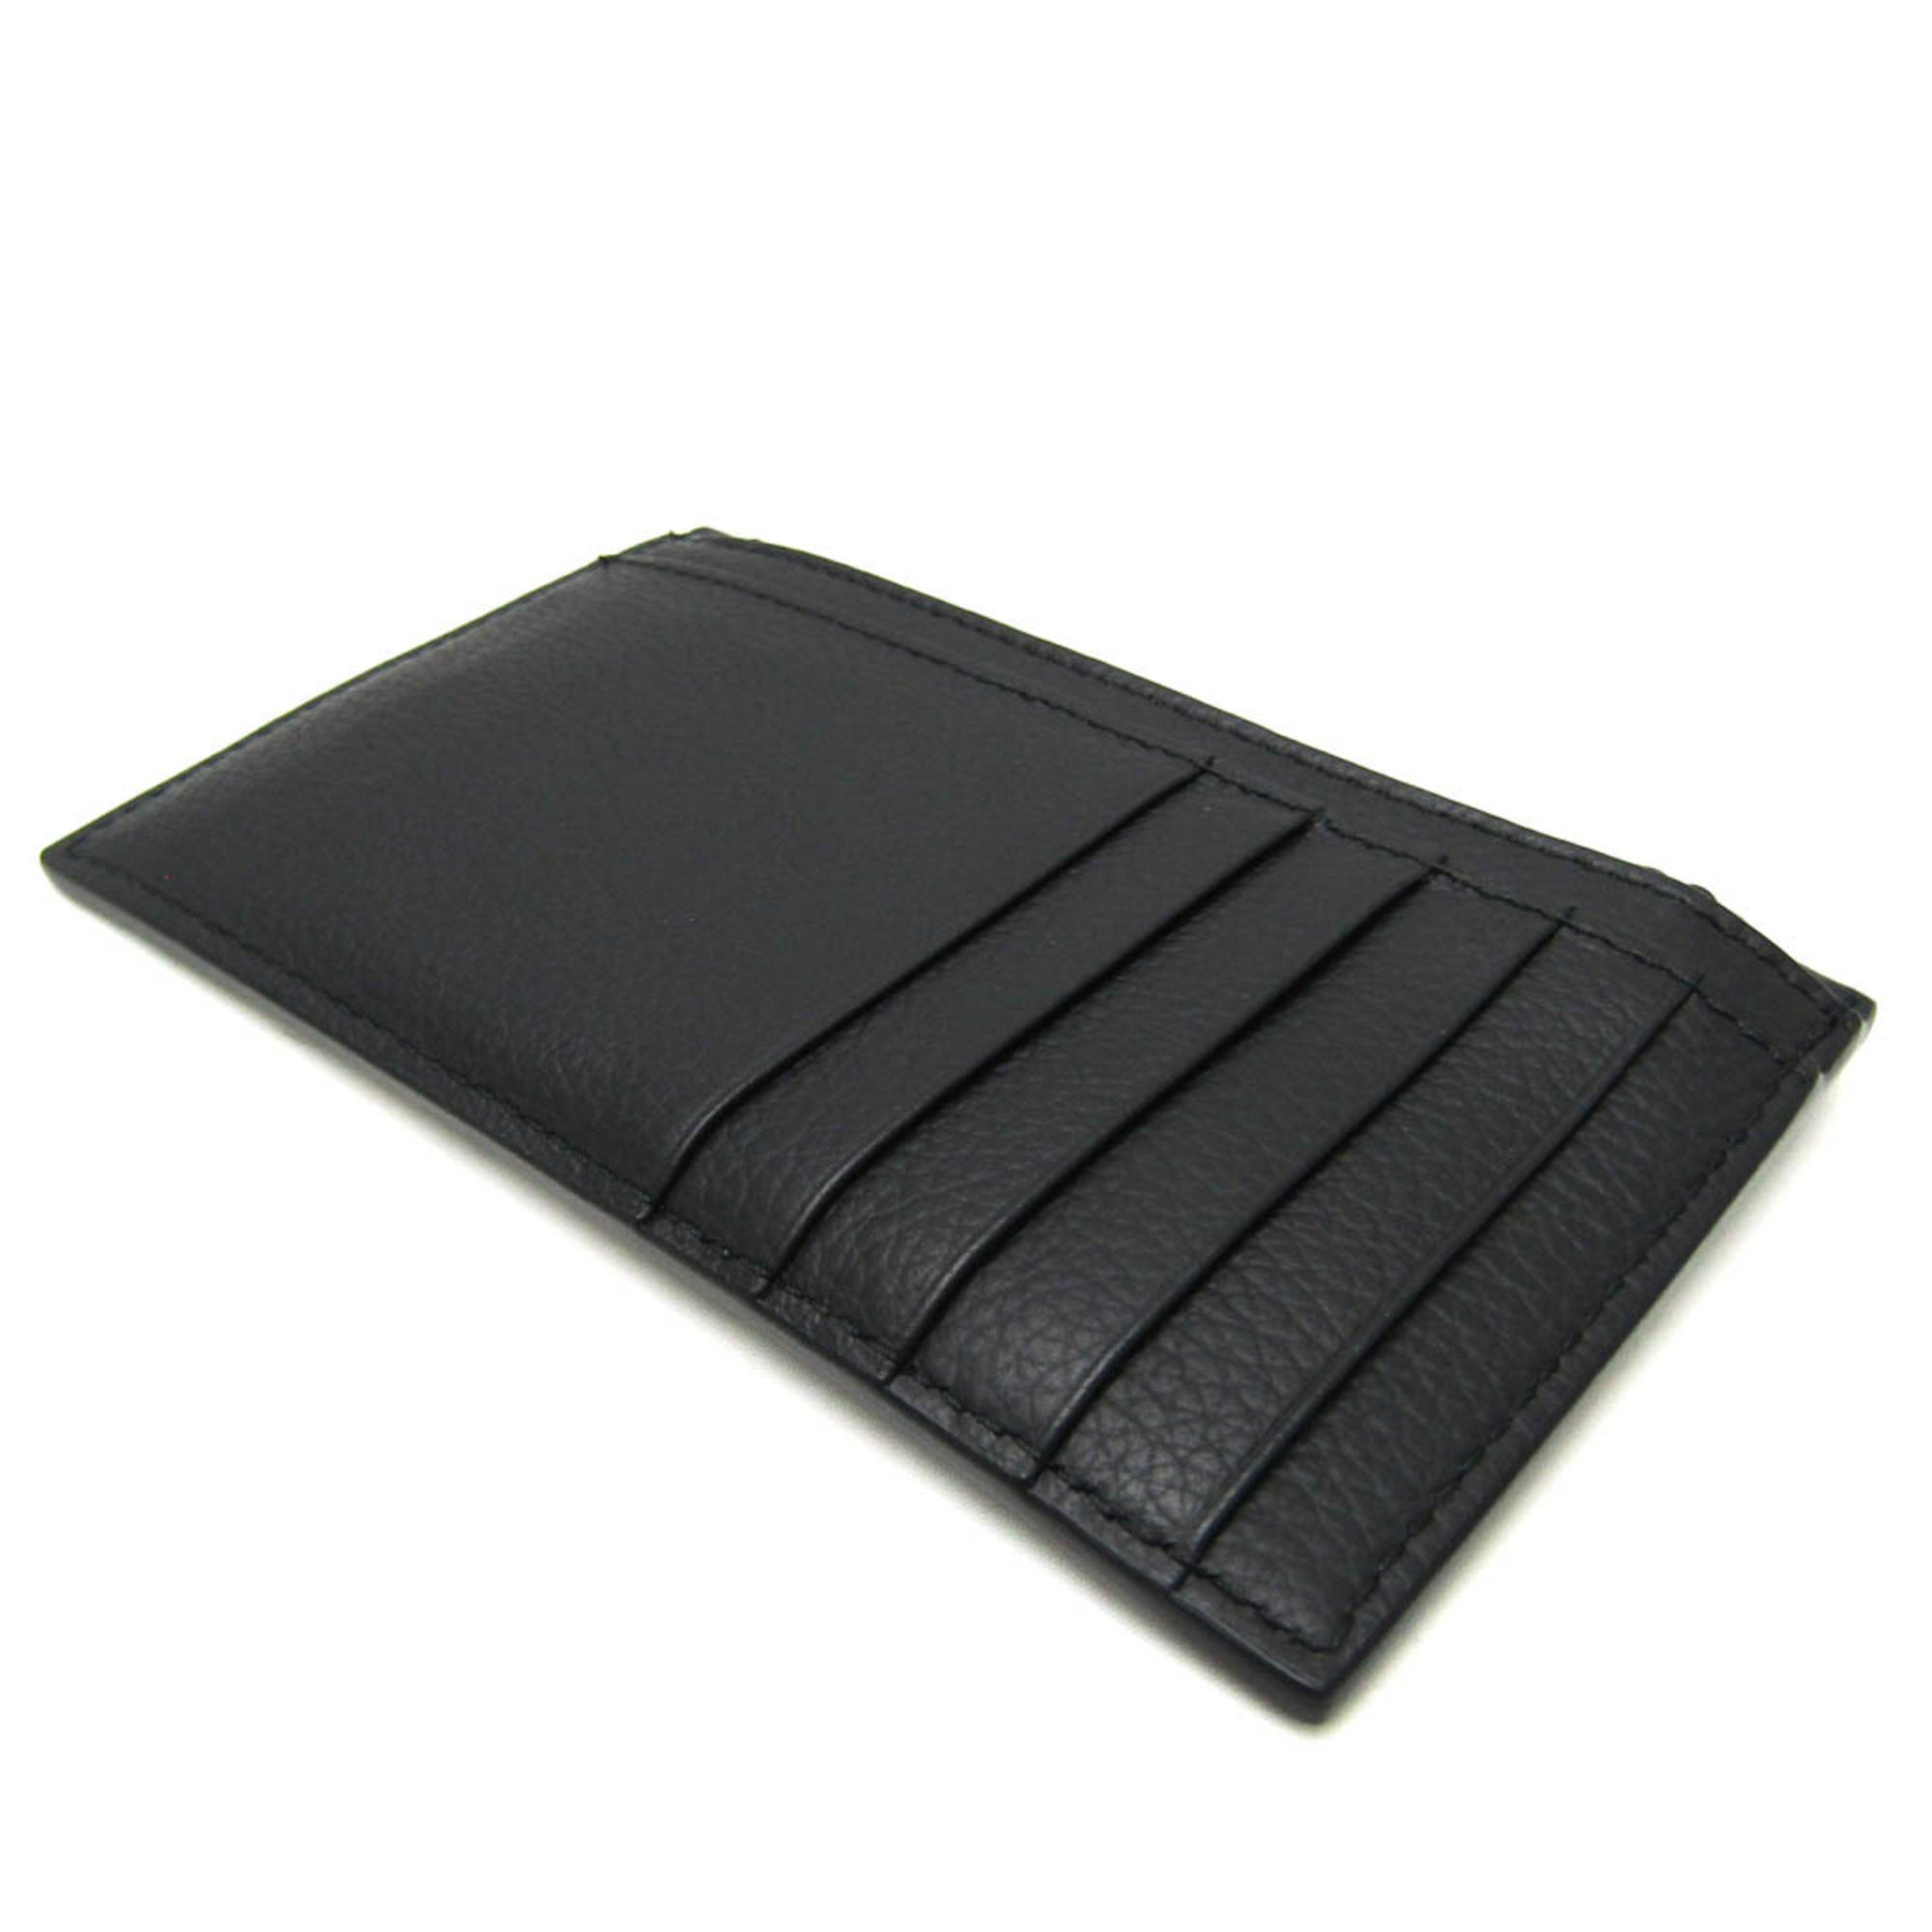 バレンシアガ(Balenciaga) MEN'S CAR LONG COIN AND CARD HOLDER IN GRAINED CALFSKIN 663714 レザー カードケース ブラック